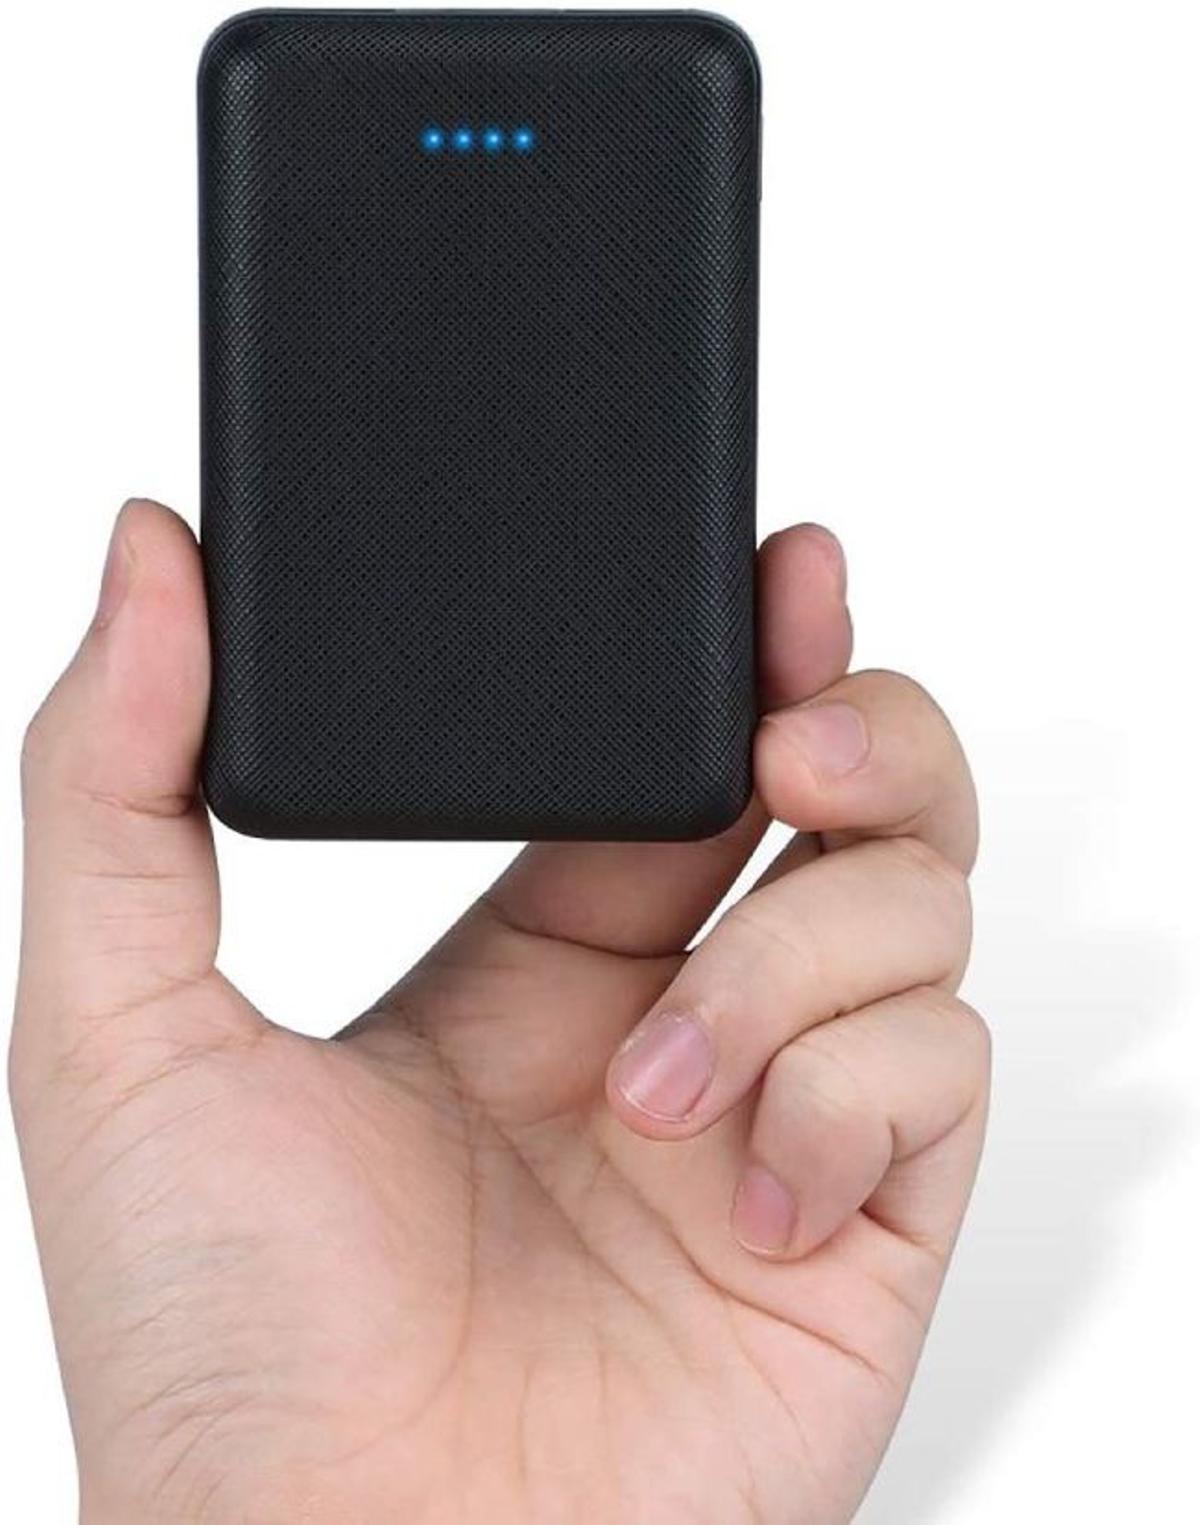  Batería Externa para móviles y tablets